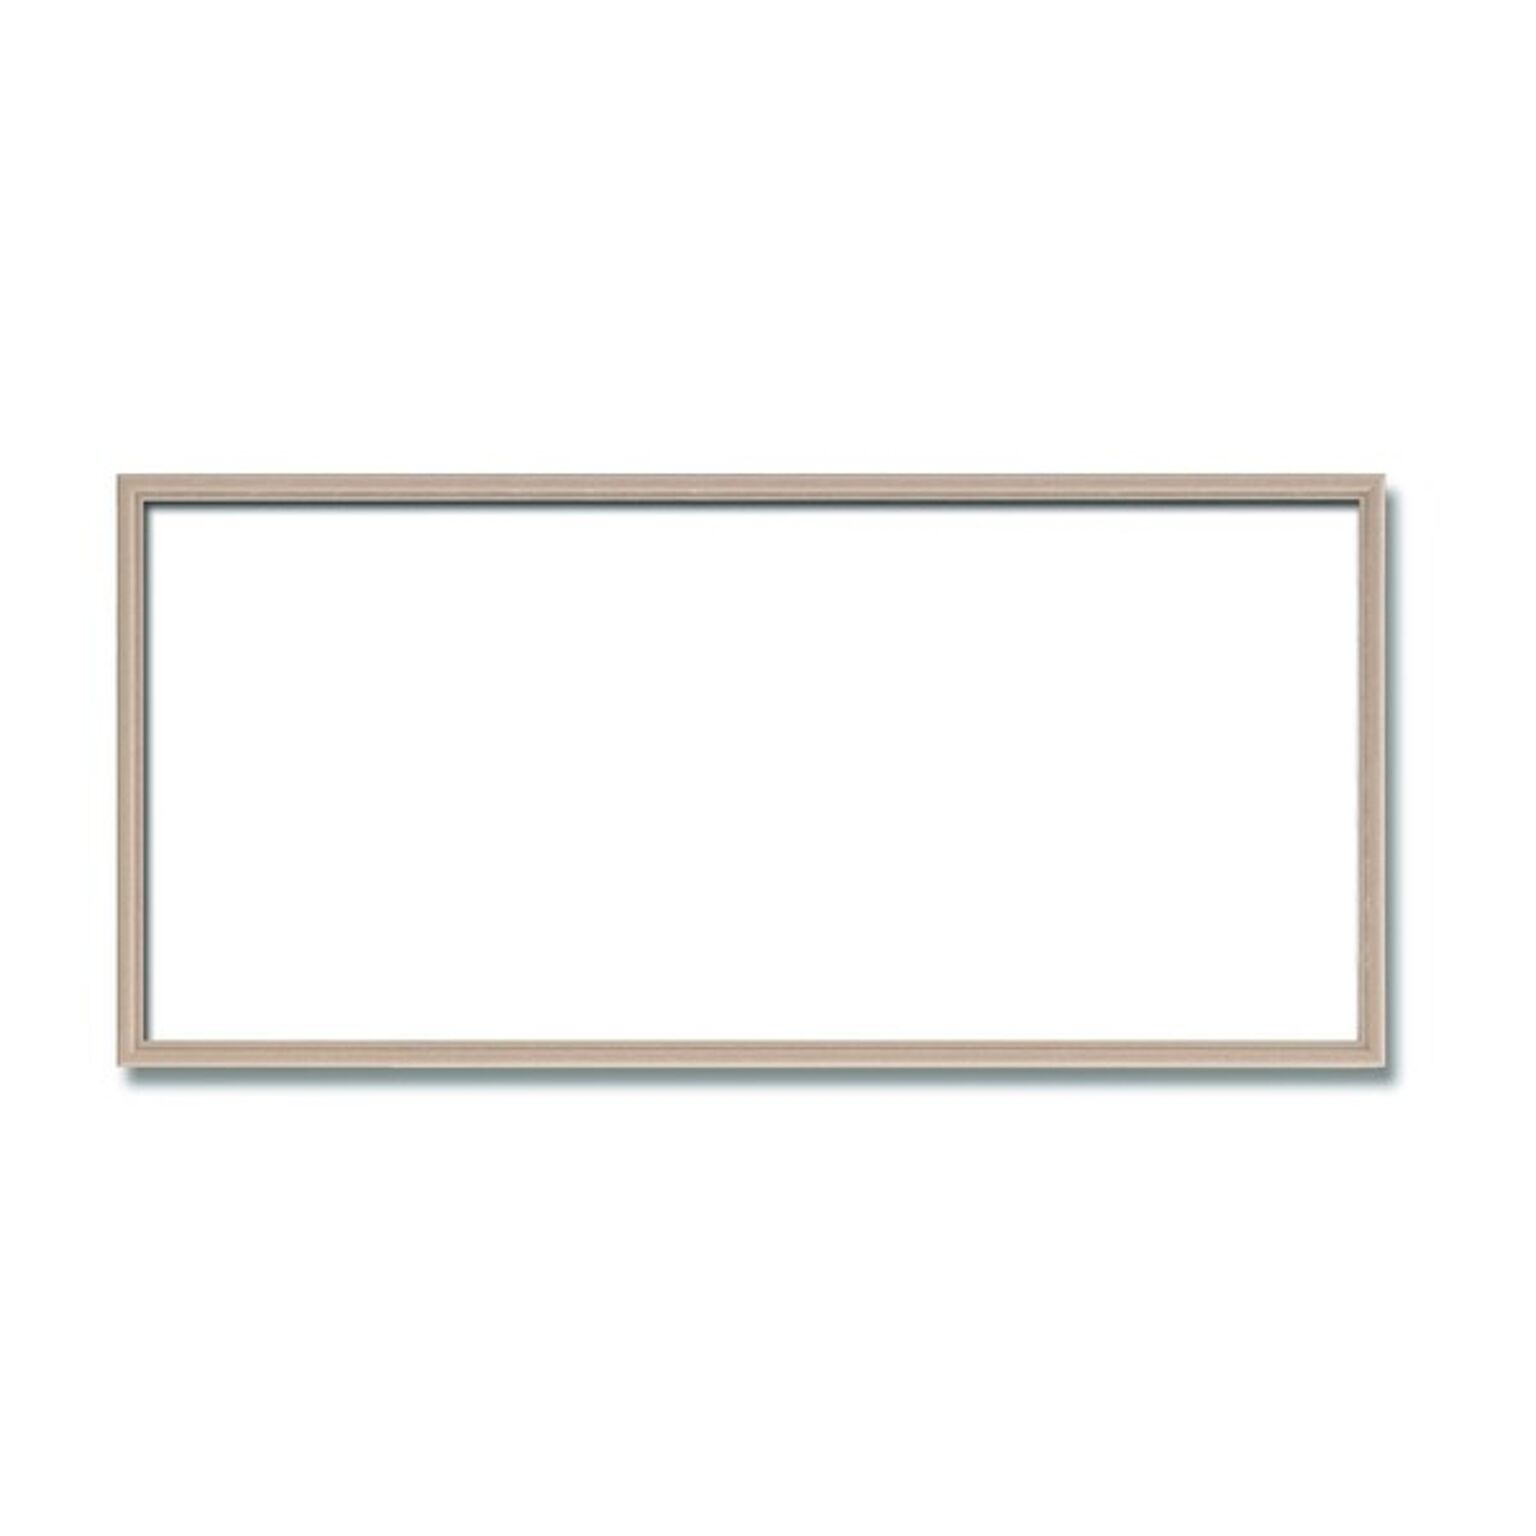 【長方形額】木製額 縦横兼用額 カラー4色展開 ■カラー長方形額（600×300mm） ピンクベージュ